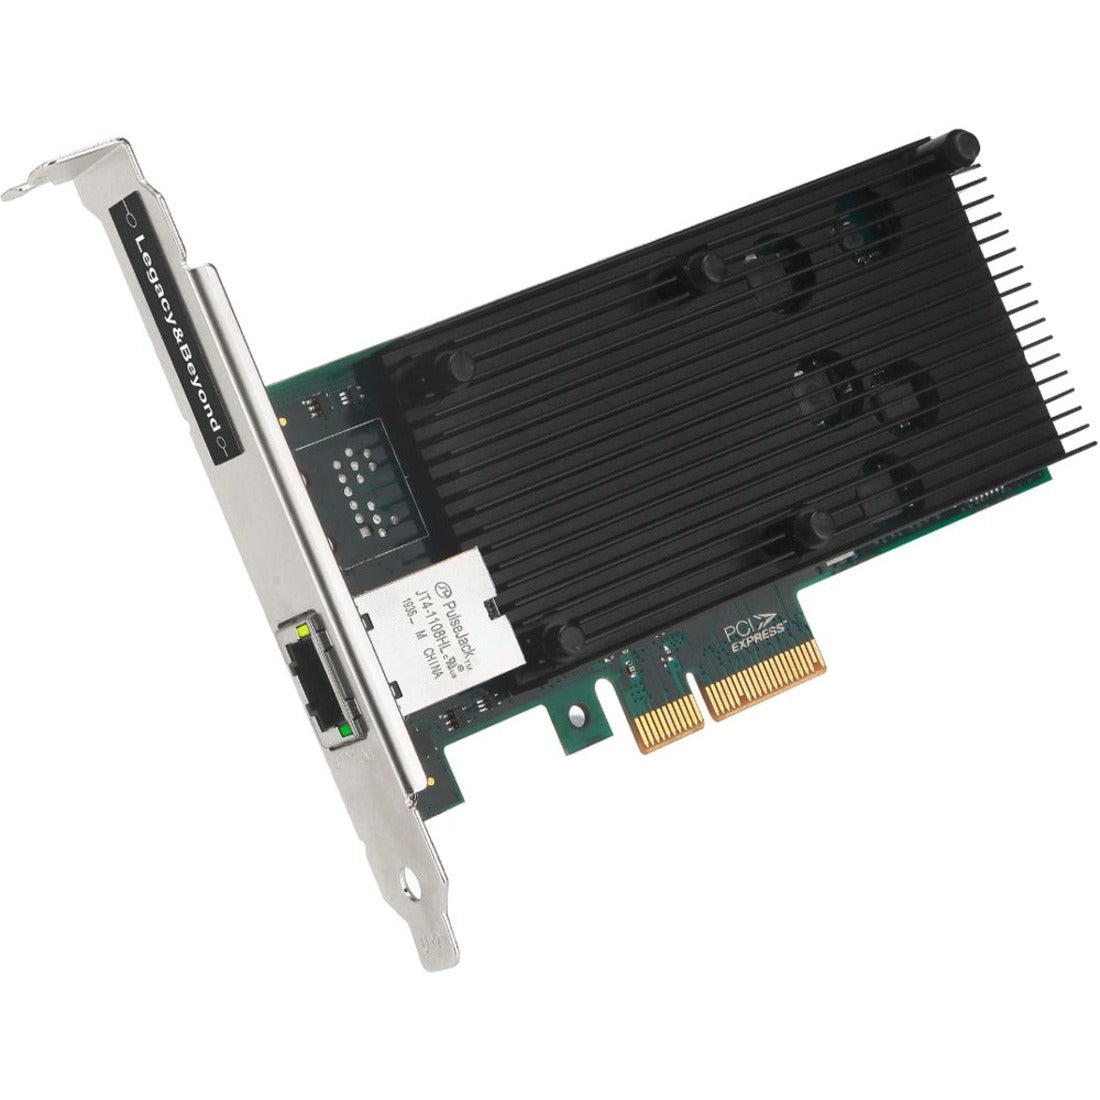 SIIG LB-GE0211-S1 Single Port 10G Ethernet Network PCI Express, 10Gigabit Ethernet Card